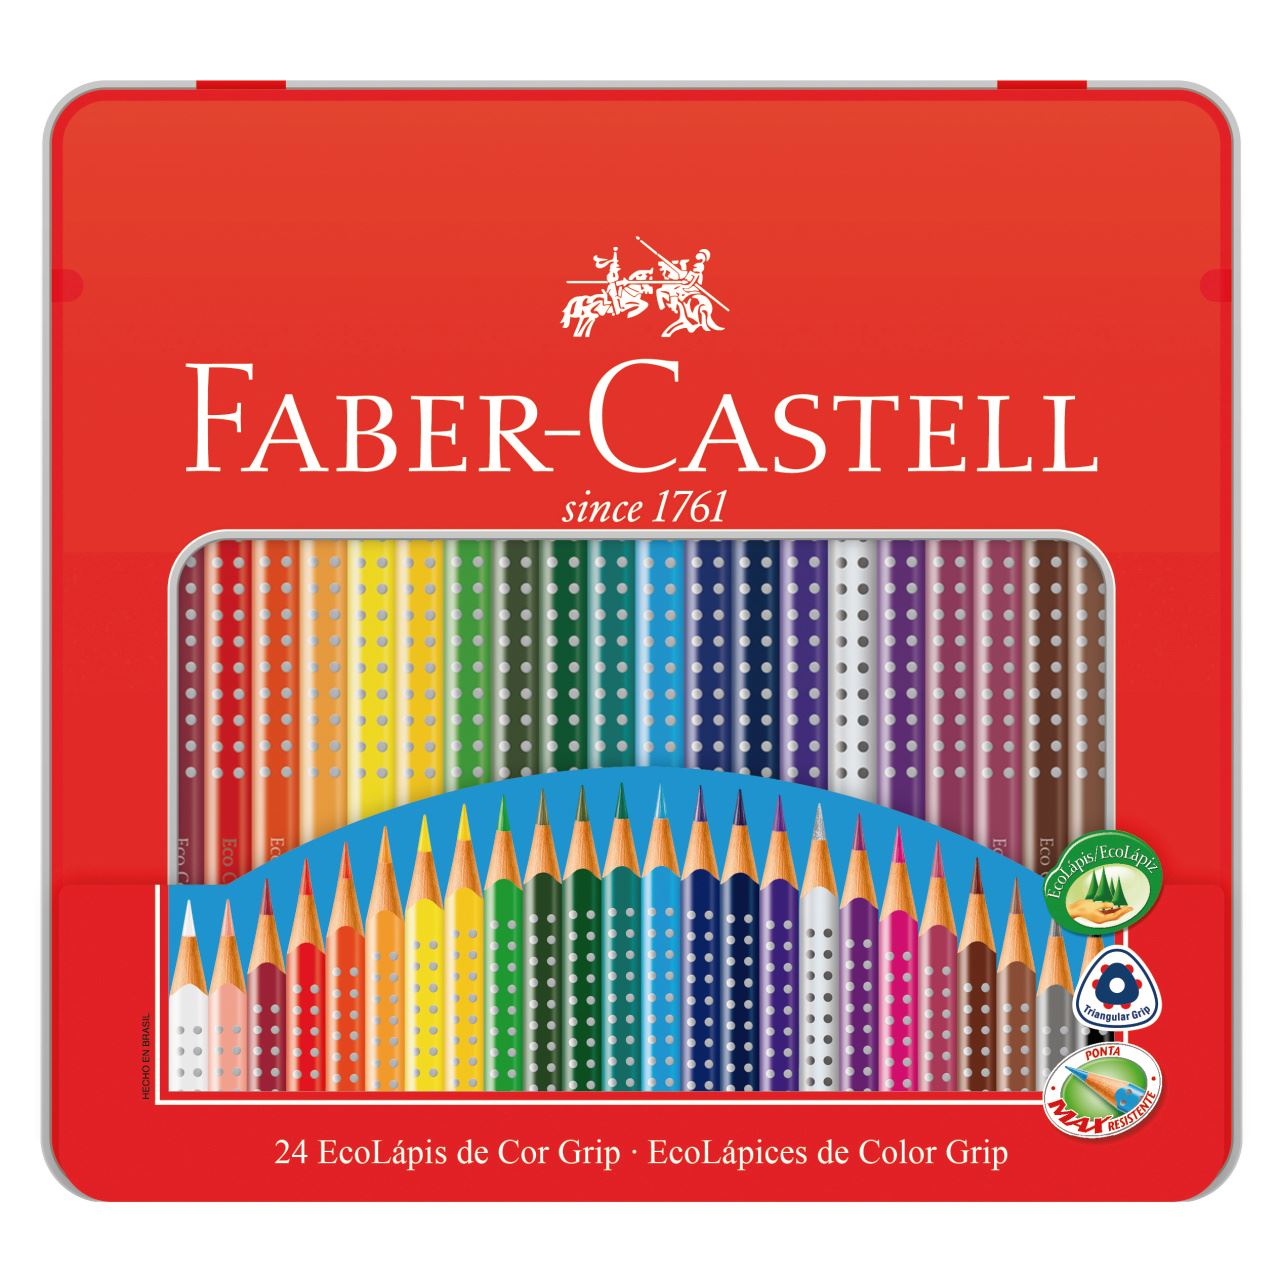 Faber-Castell - Ecolapis de Cor Grip 24 Cores